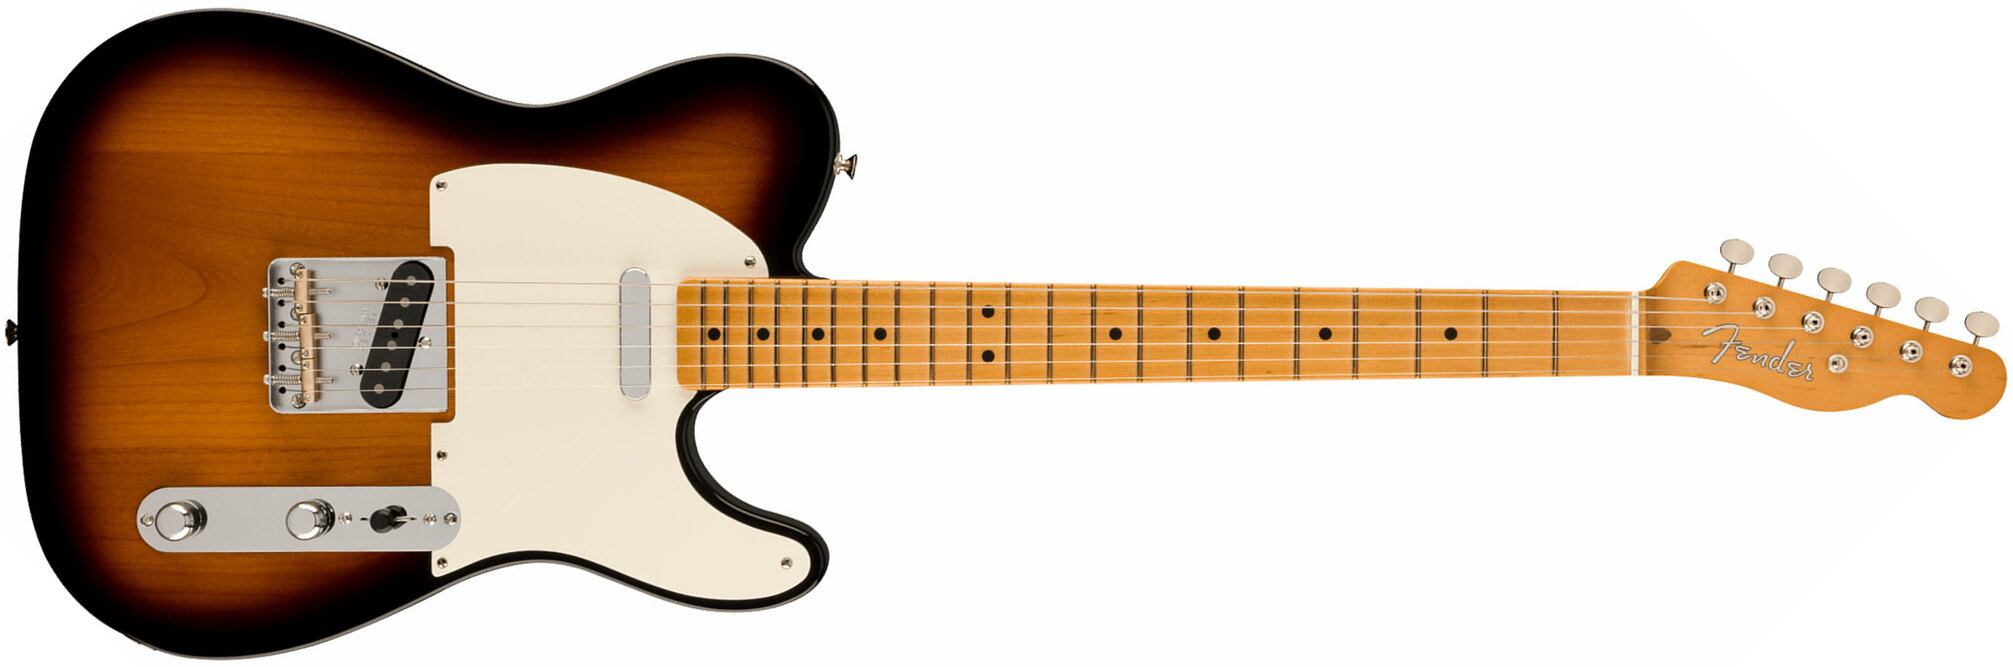 Fender Tele Nocaster 50s Vintera 2 Mex 2s Ht Mn - 2-color Sunburst - Tel shape electric guitar - Main picture